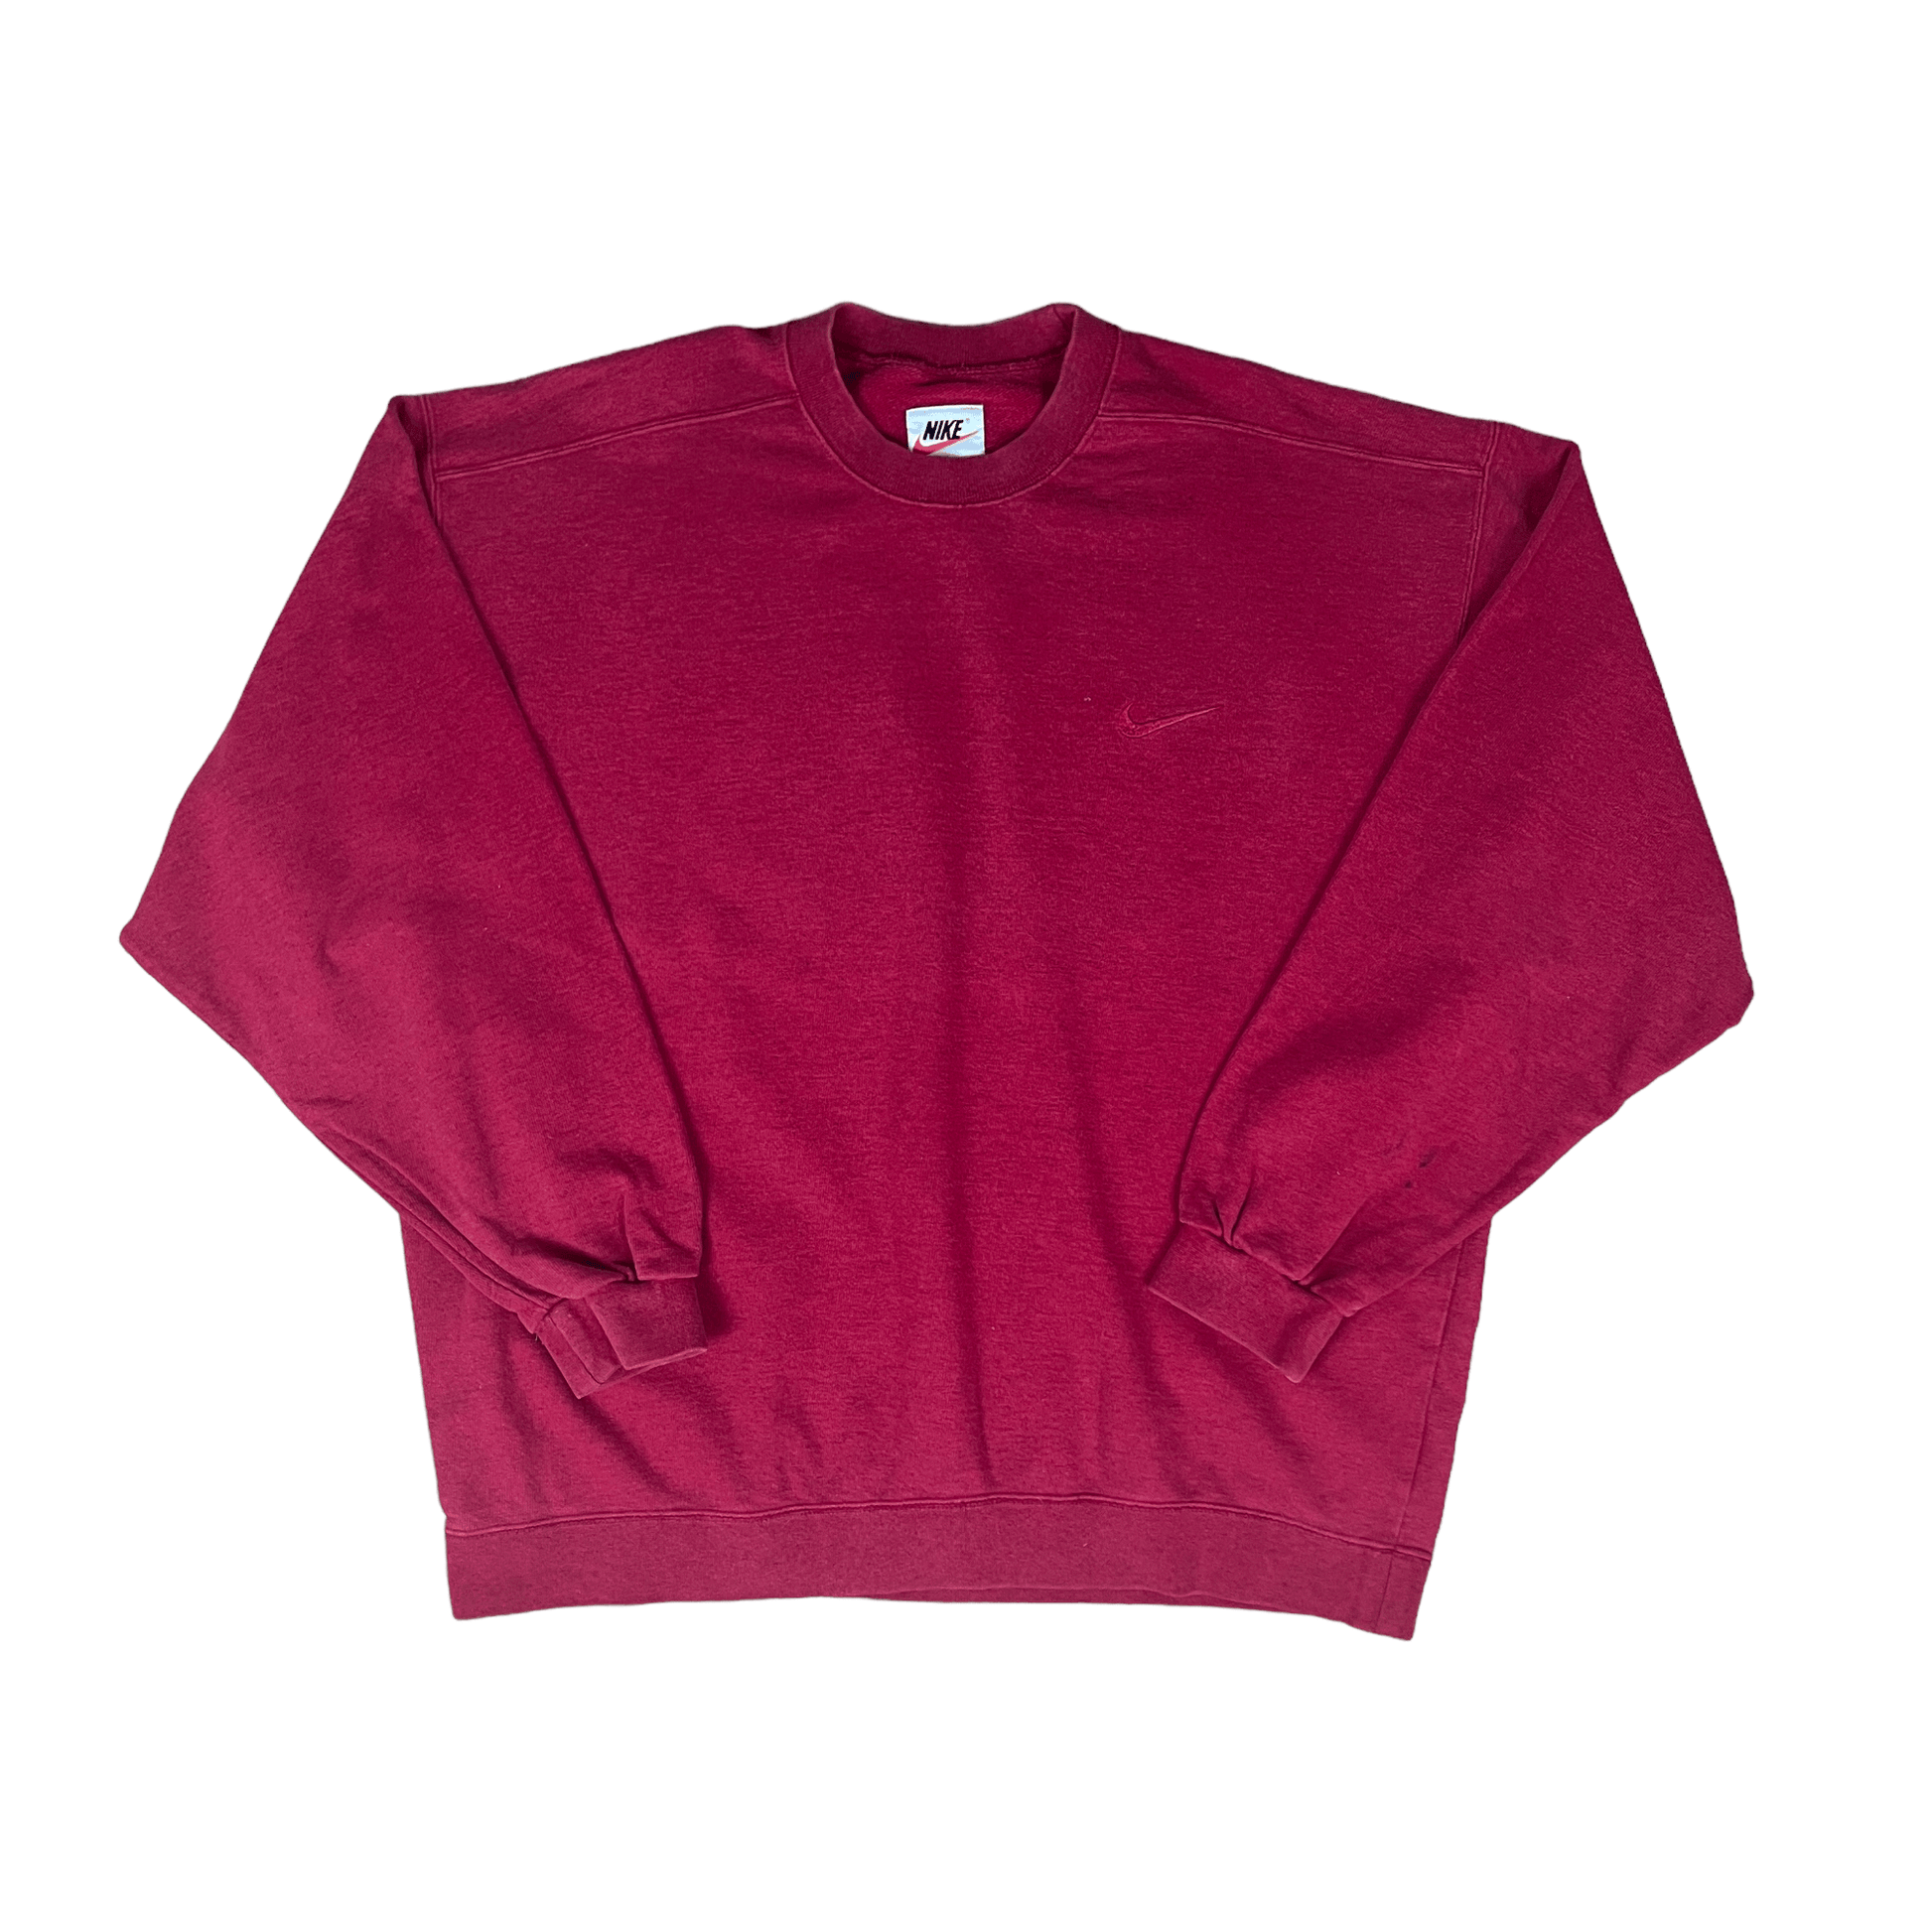 Vintage 90s Burgundy/ Red Nike Sweatshirt - Extra Large - The Streetwear Studio